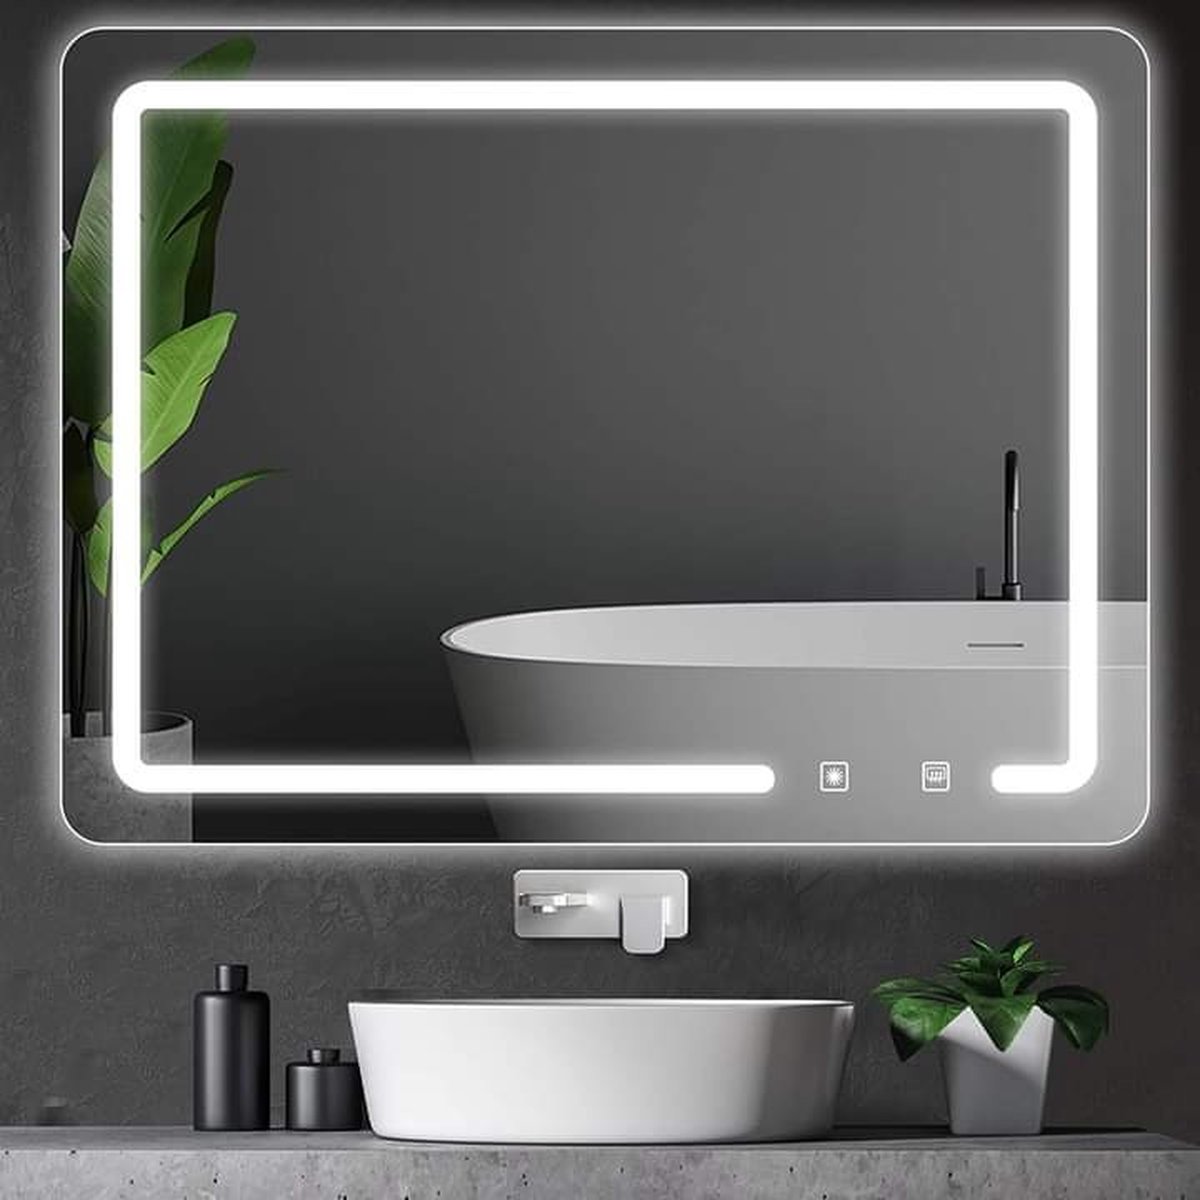 SensaHome - Luxe Badkamerspiegel met Geïntegreerde LED Verlichting - Afgeronde hoeken - Wandspiegel - Badkamer/Make-up spiegel - 60 x 80 CM